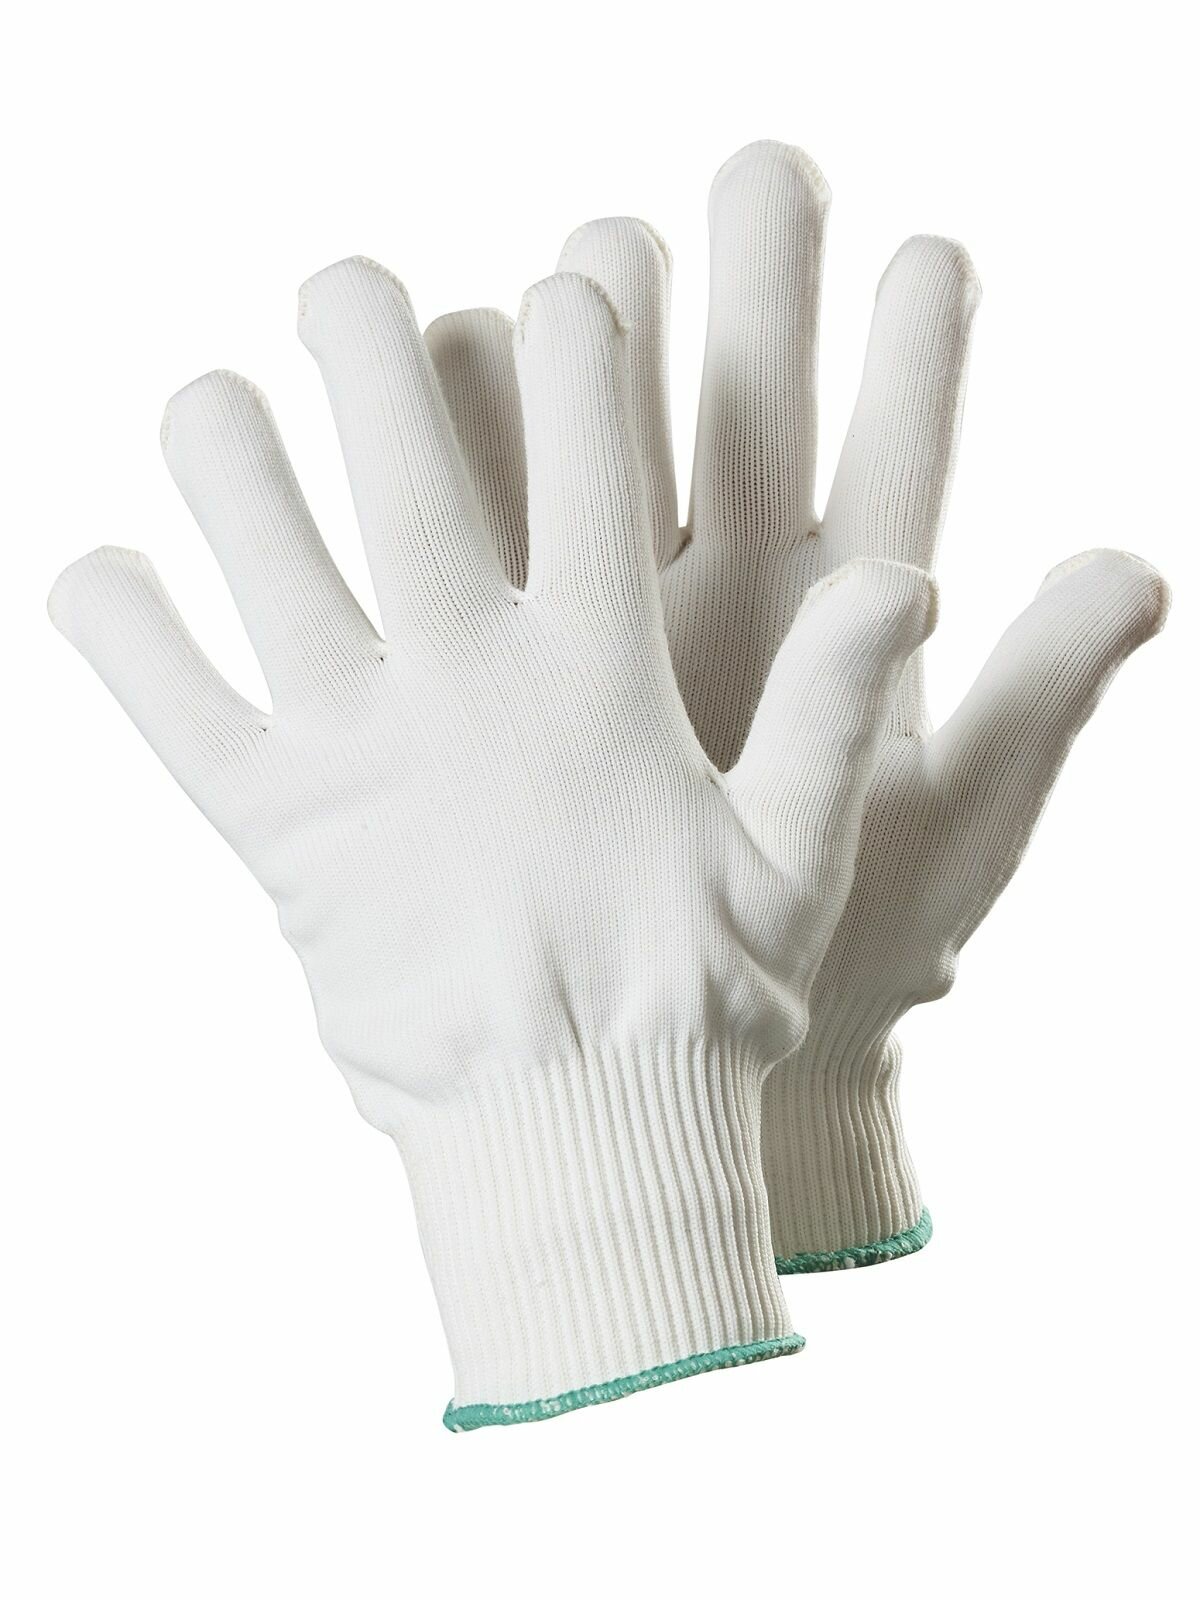 Перчатки TEGERA 310A текстильные удобные дышащие размер 8